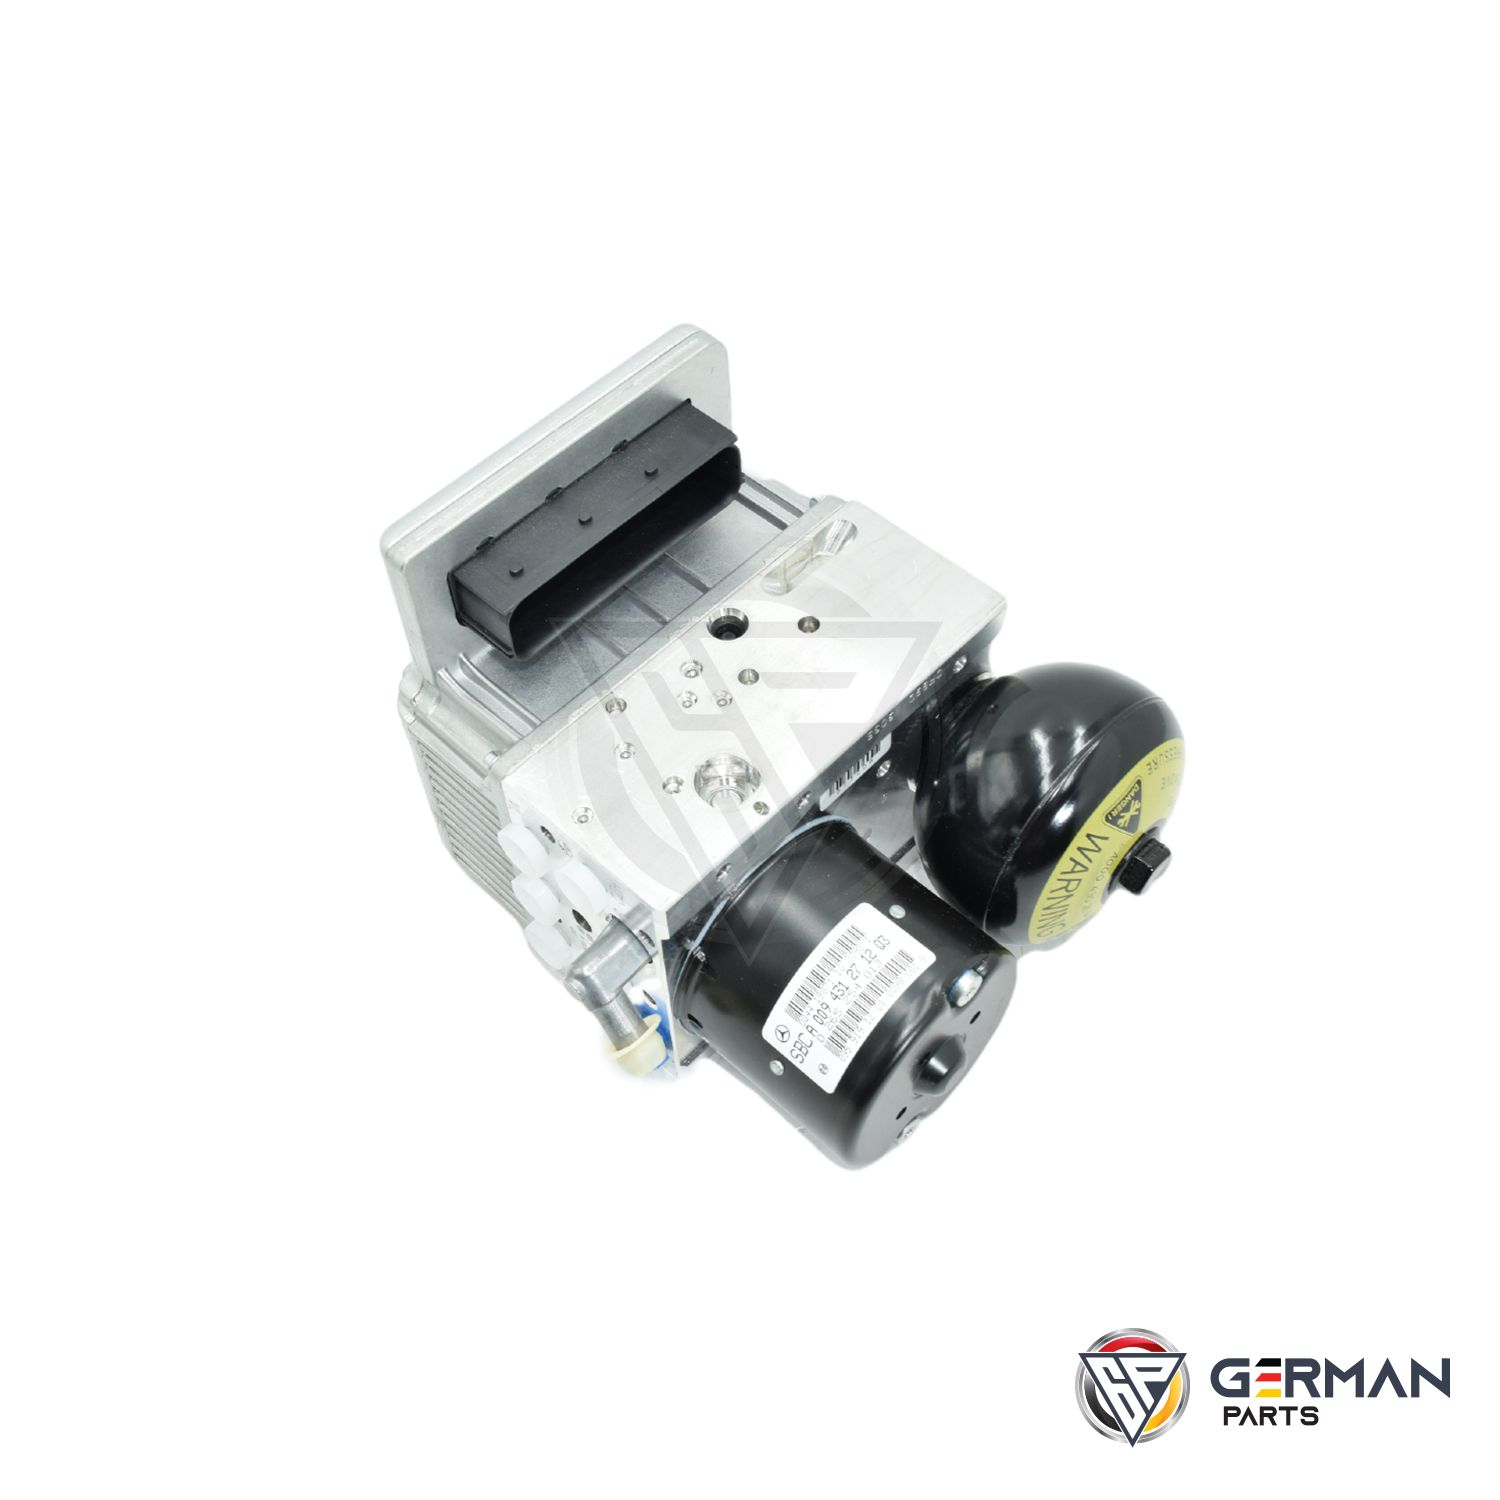 Buy Mercedes Benz Esp Control Unit 009431271280 - German Parts